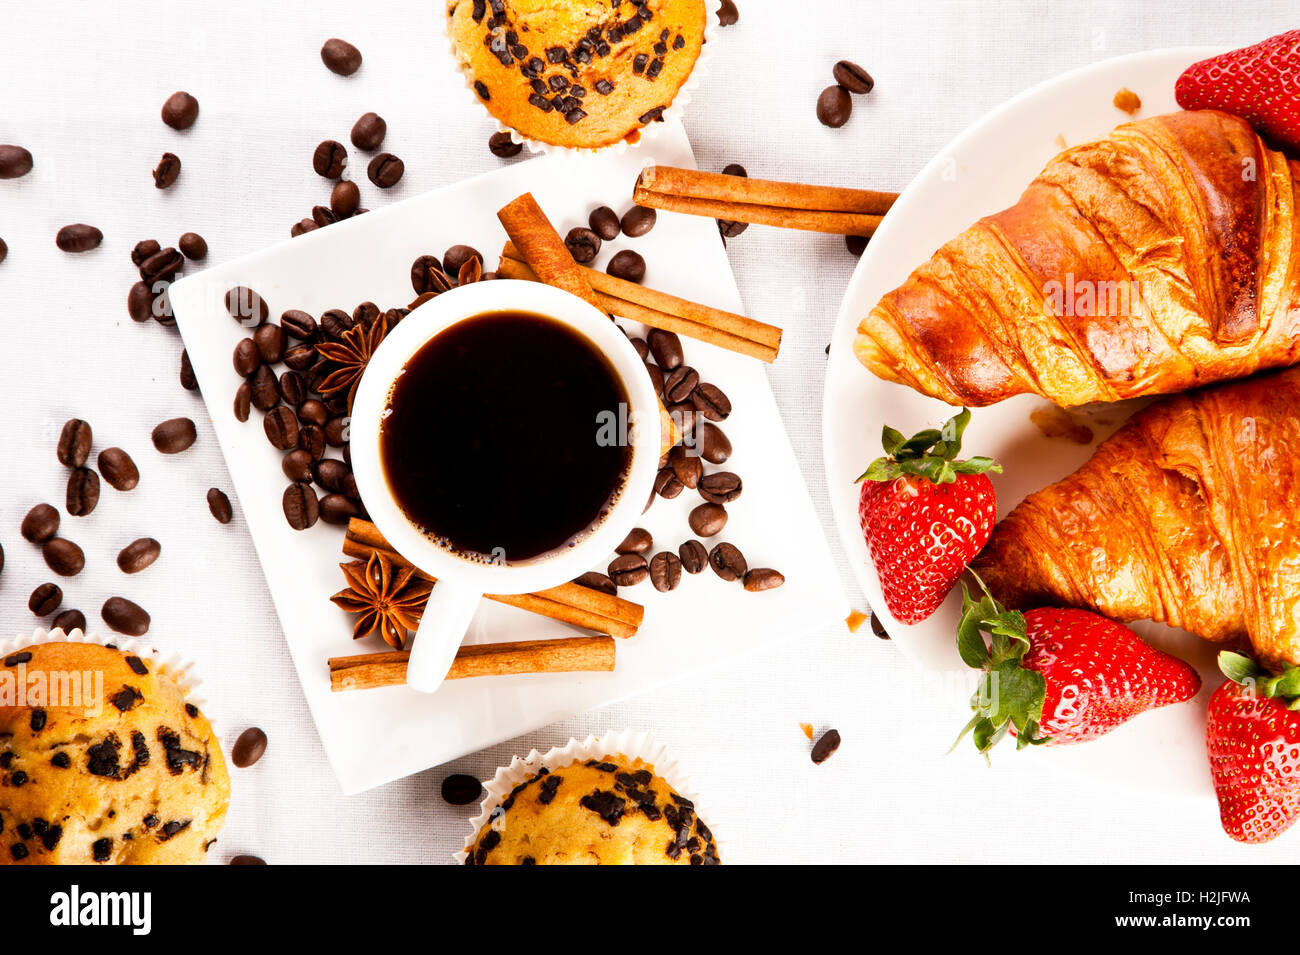 Café chaud et un muffin, croissant Banque D'Images